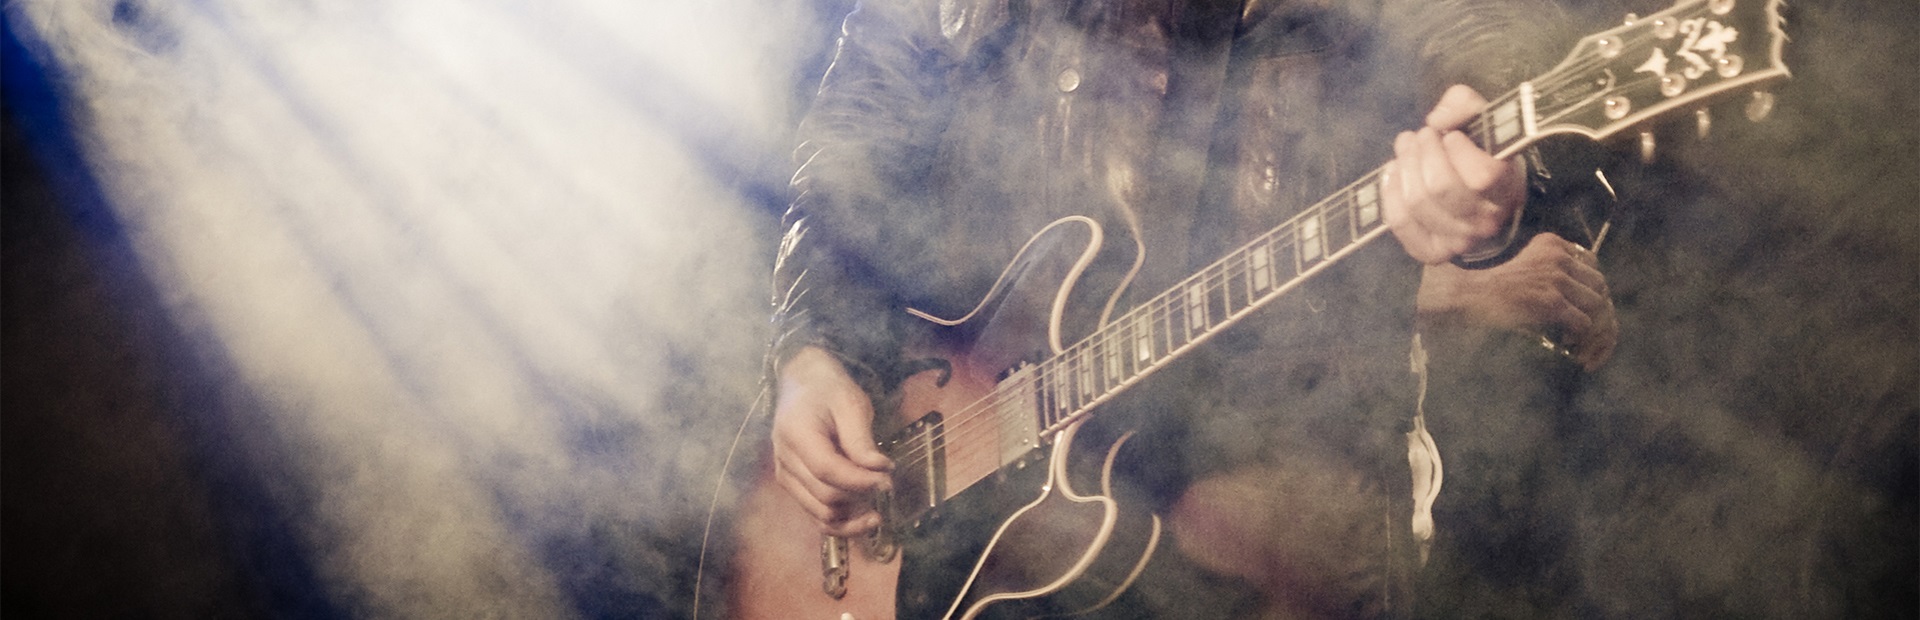 Muzyk podczas koncertu grający na gitarze, w smudze reflektorów i scenicznego sztucznego dymu.    